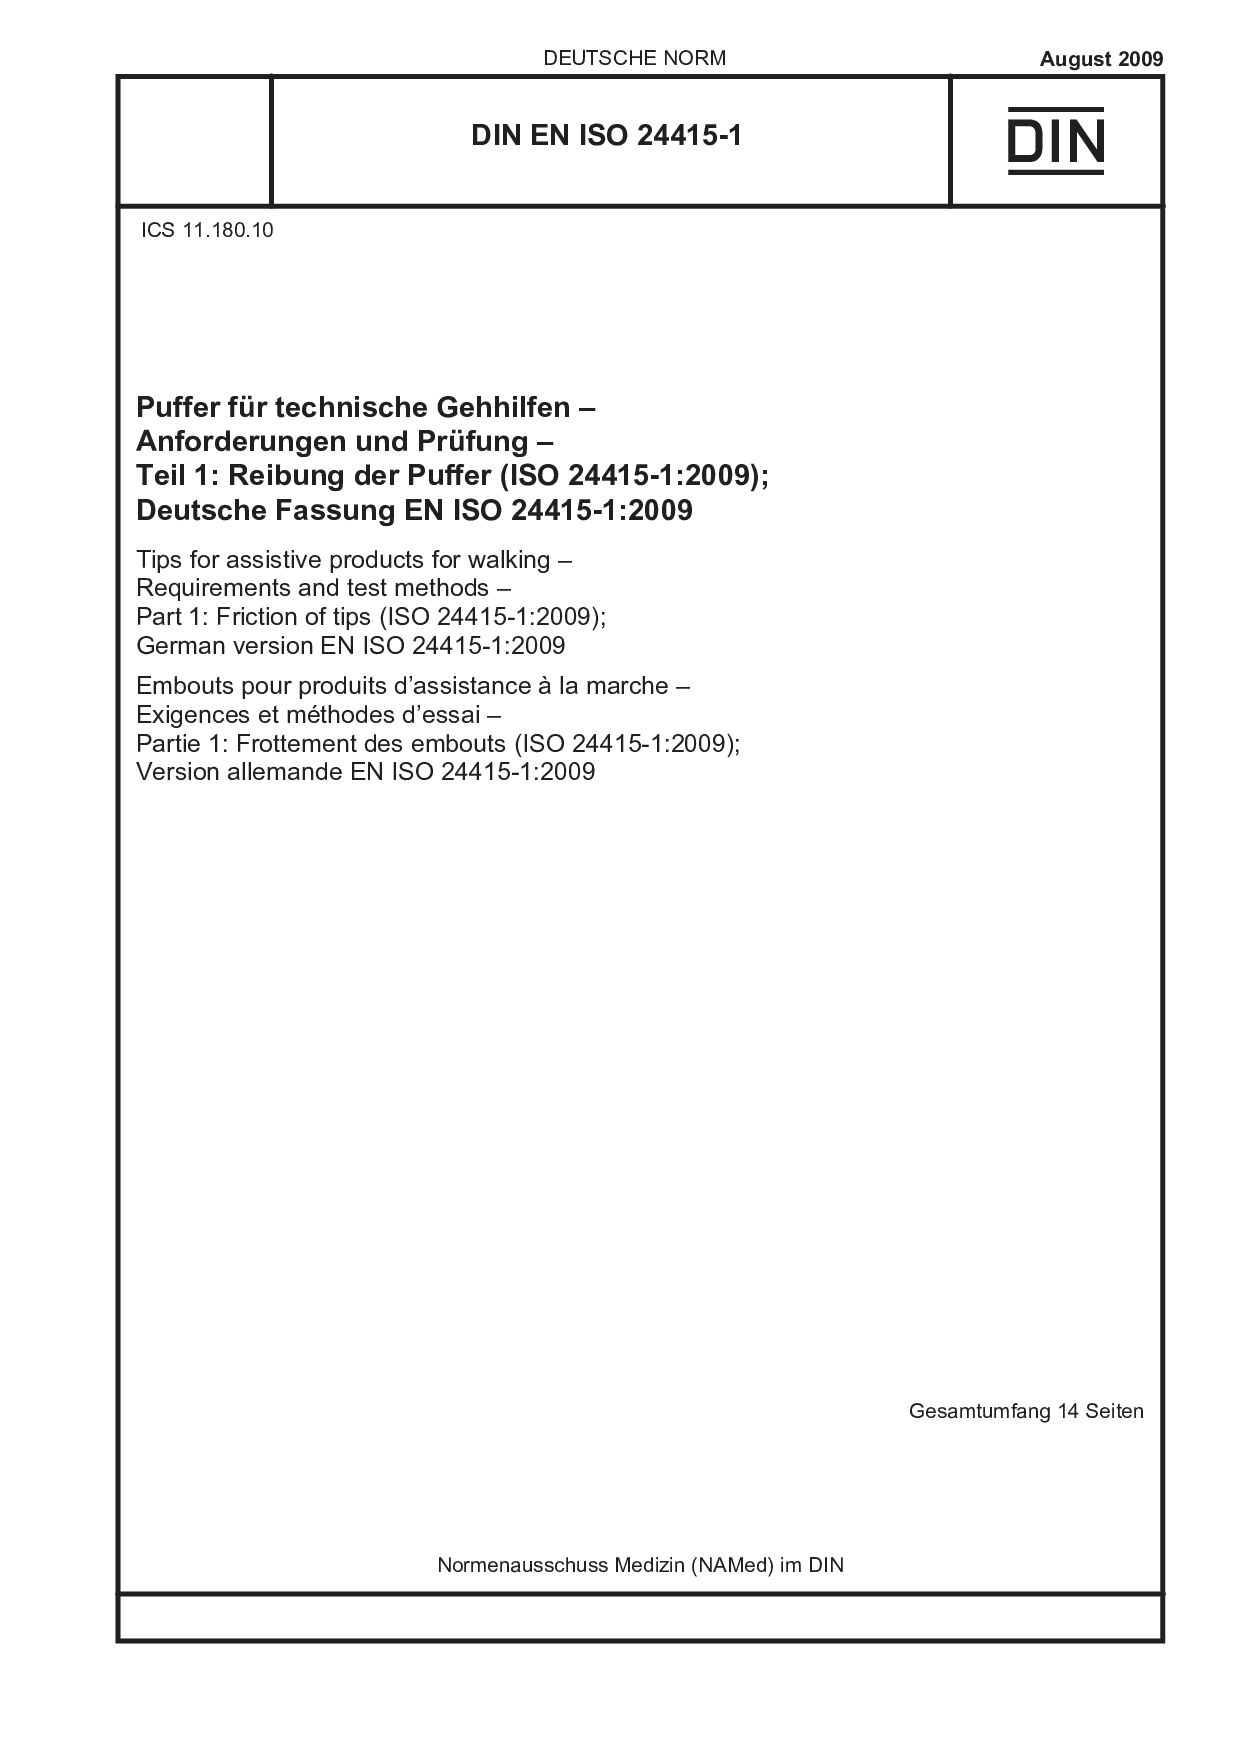 DIN EN ISO 24415-1:2009封面图